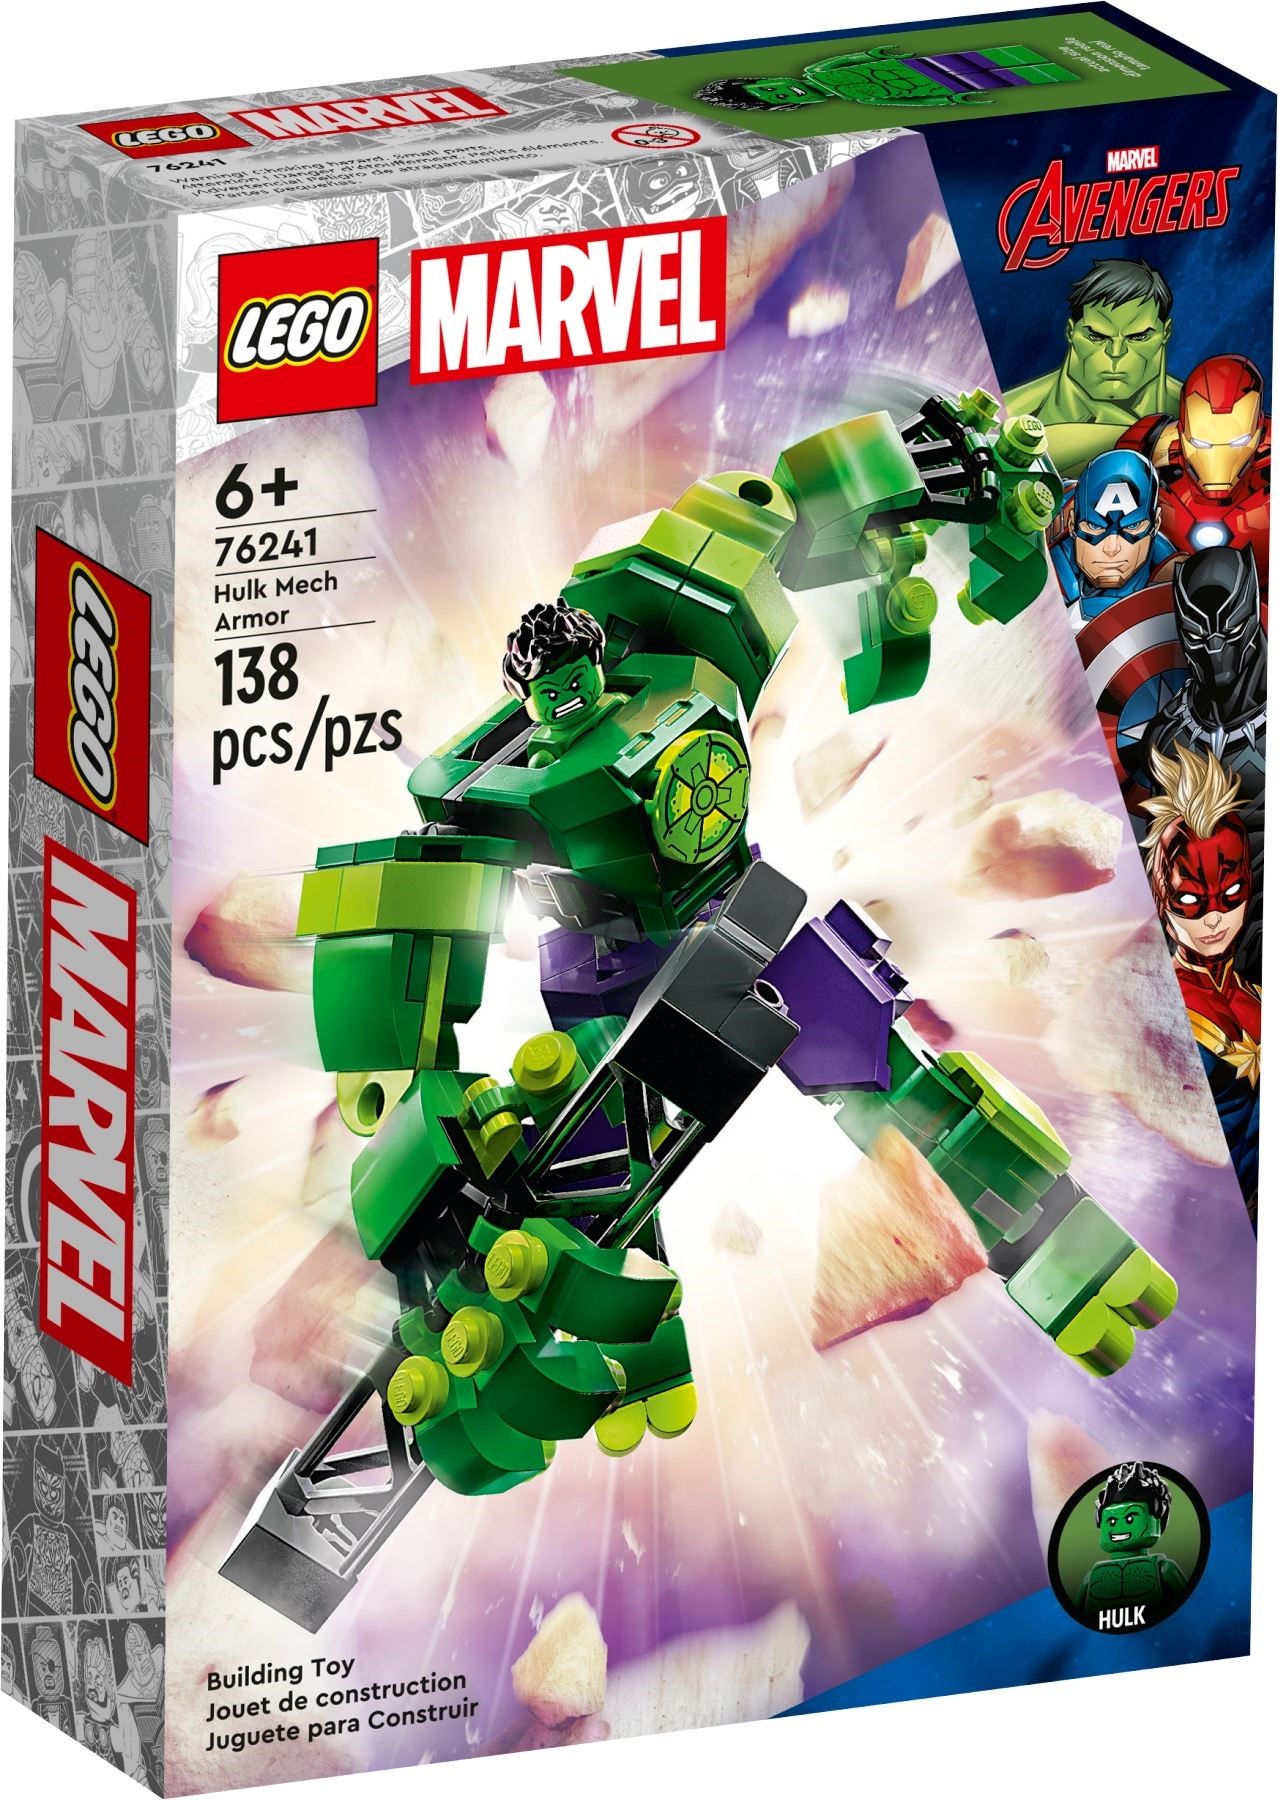 LEGO Marvel 76255 pas cher, Le nouveau vaisseau des Gardiens